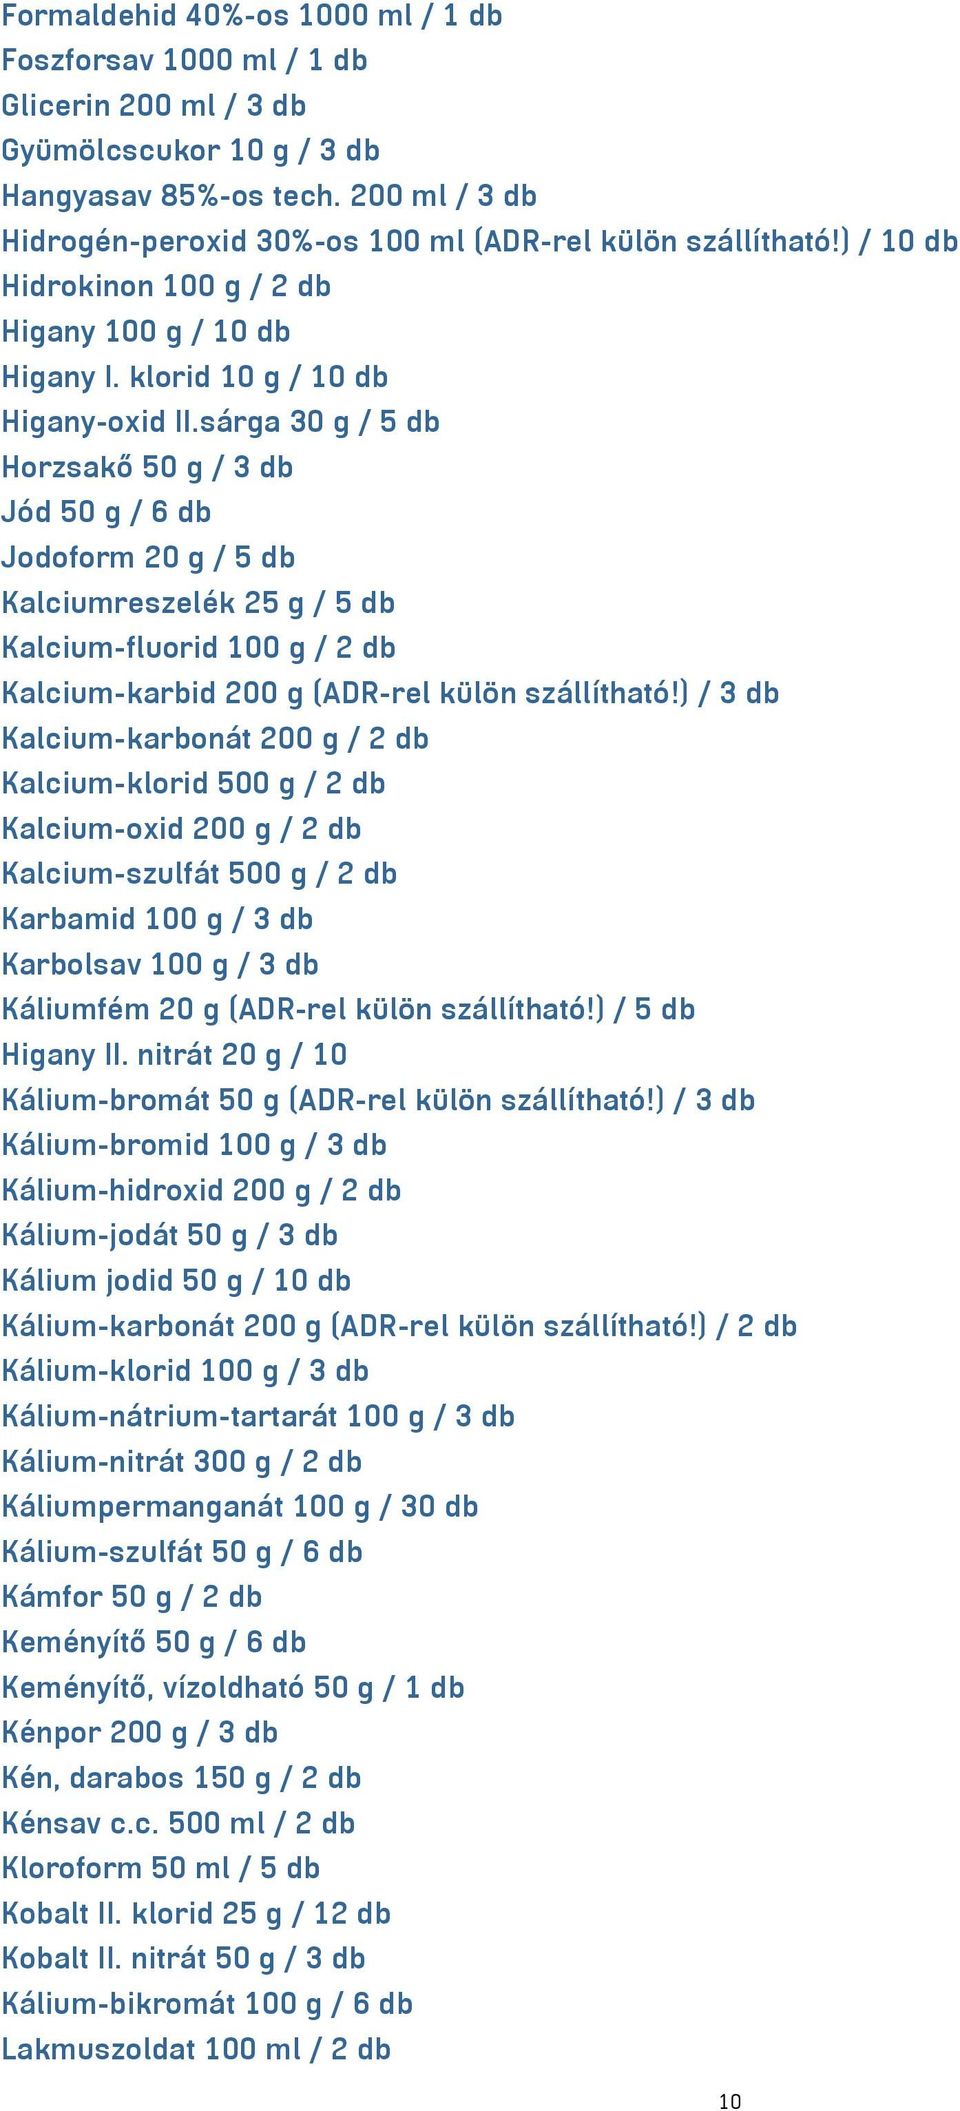 sárga 30 g / 5 db Horzsakő 50 g / 3 db Jód 50 g / 6 db Jodoform 20 g / 5 db Kalciumreszelék 25 g / 5 db Kalcium-fluorid 100 g / 2 db Kalcium-karbid 200 g (ADR-rel külön szállítható!